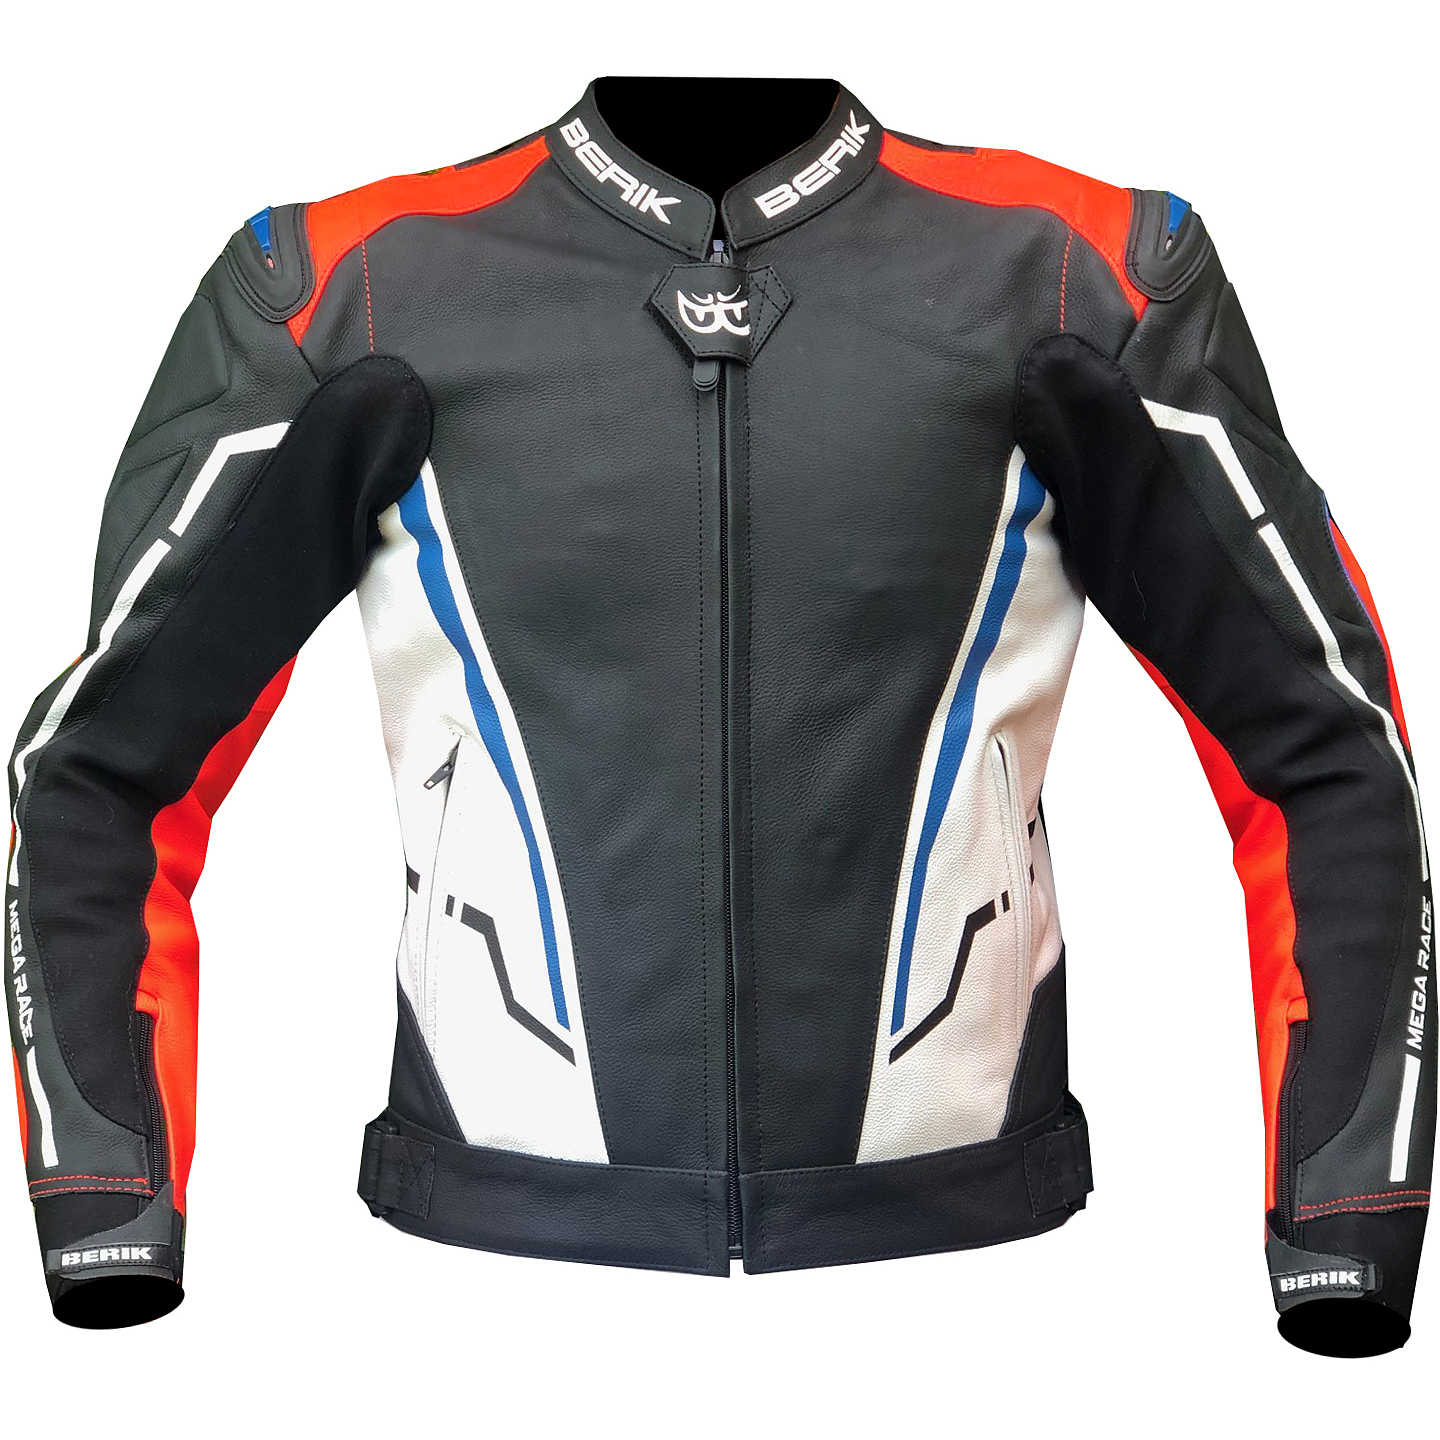 Berik 2.0 Technical Motorcycle Jacket in Leather LJ 181334-B Racing ...